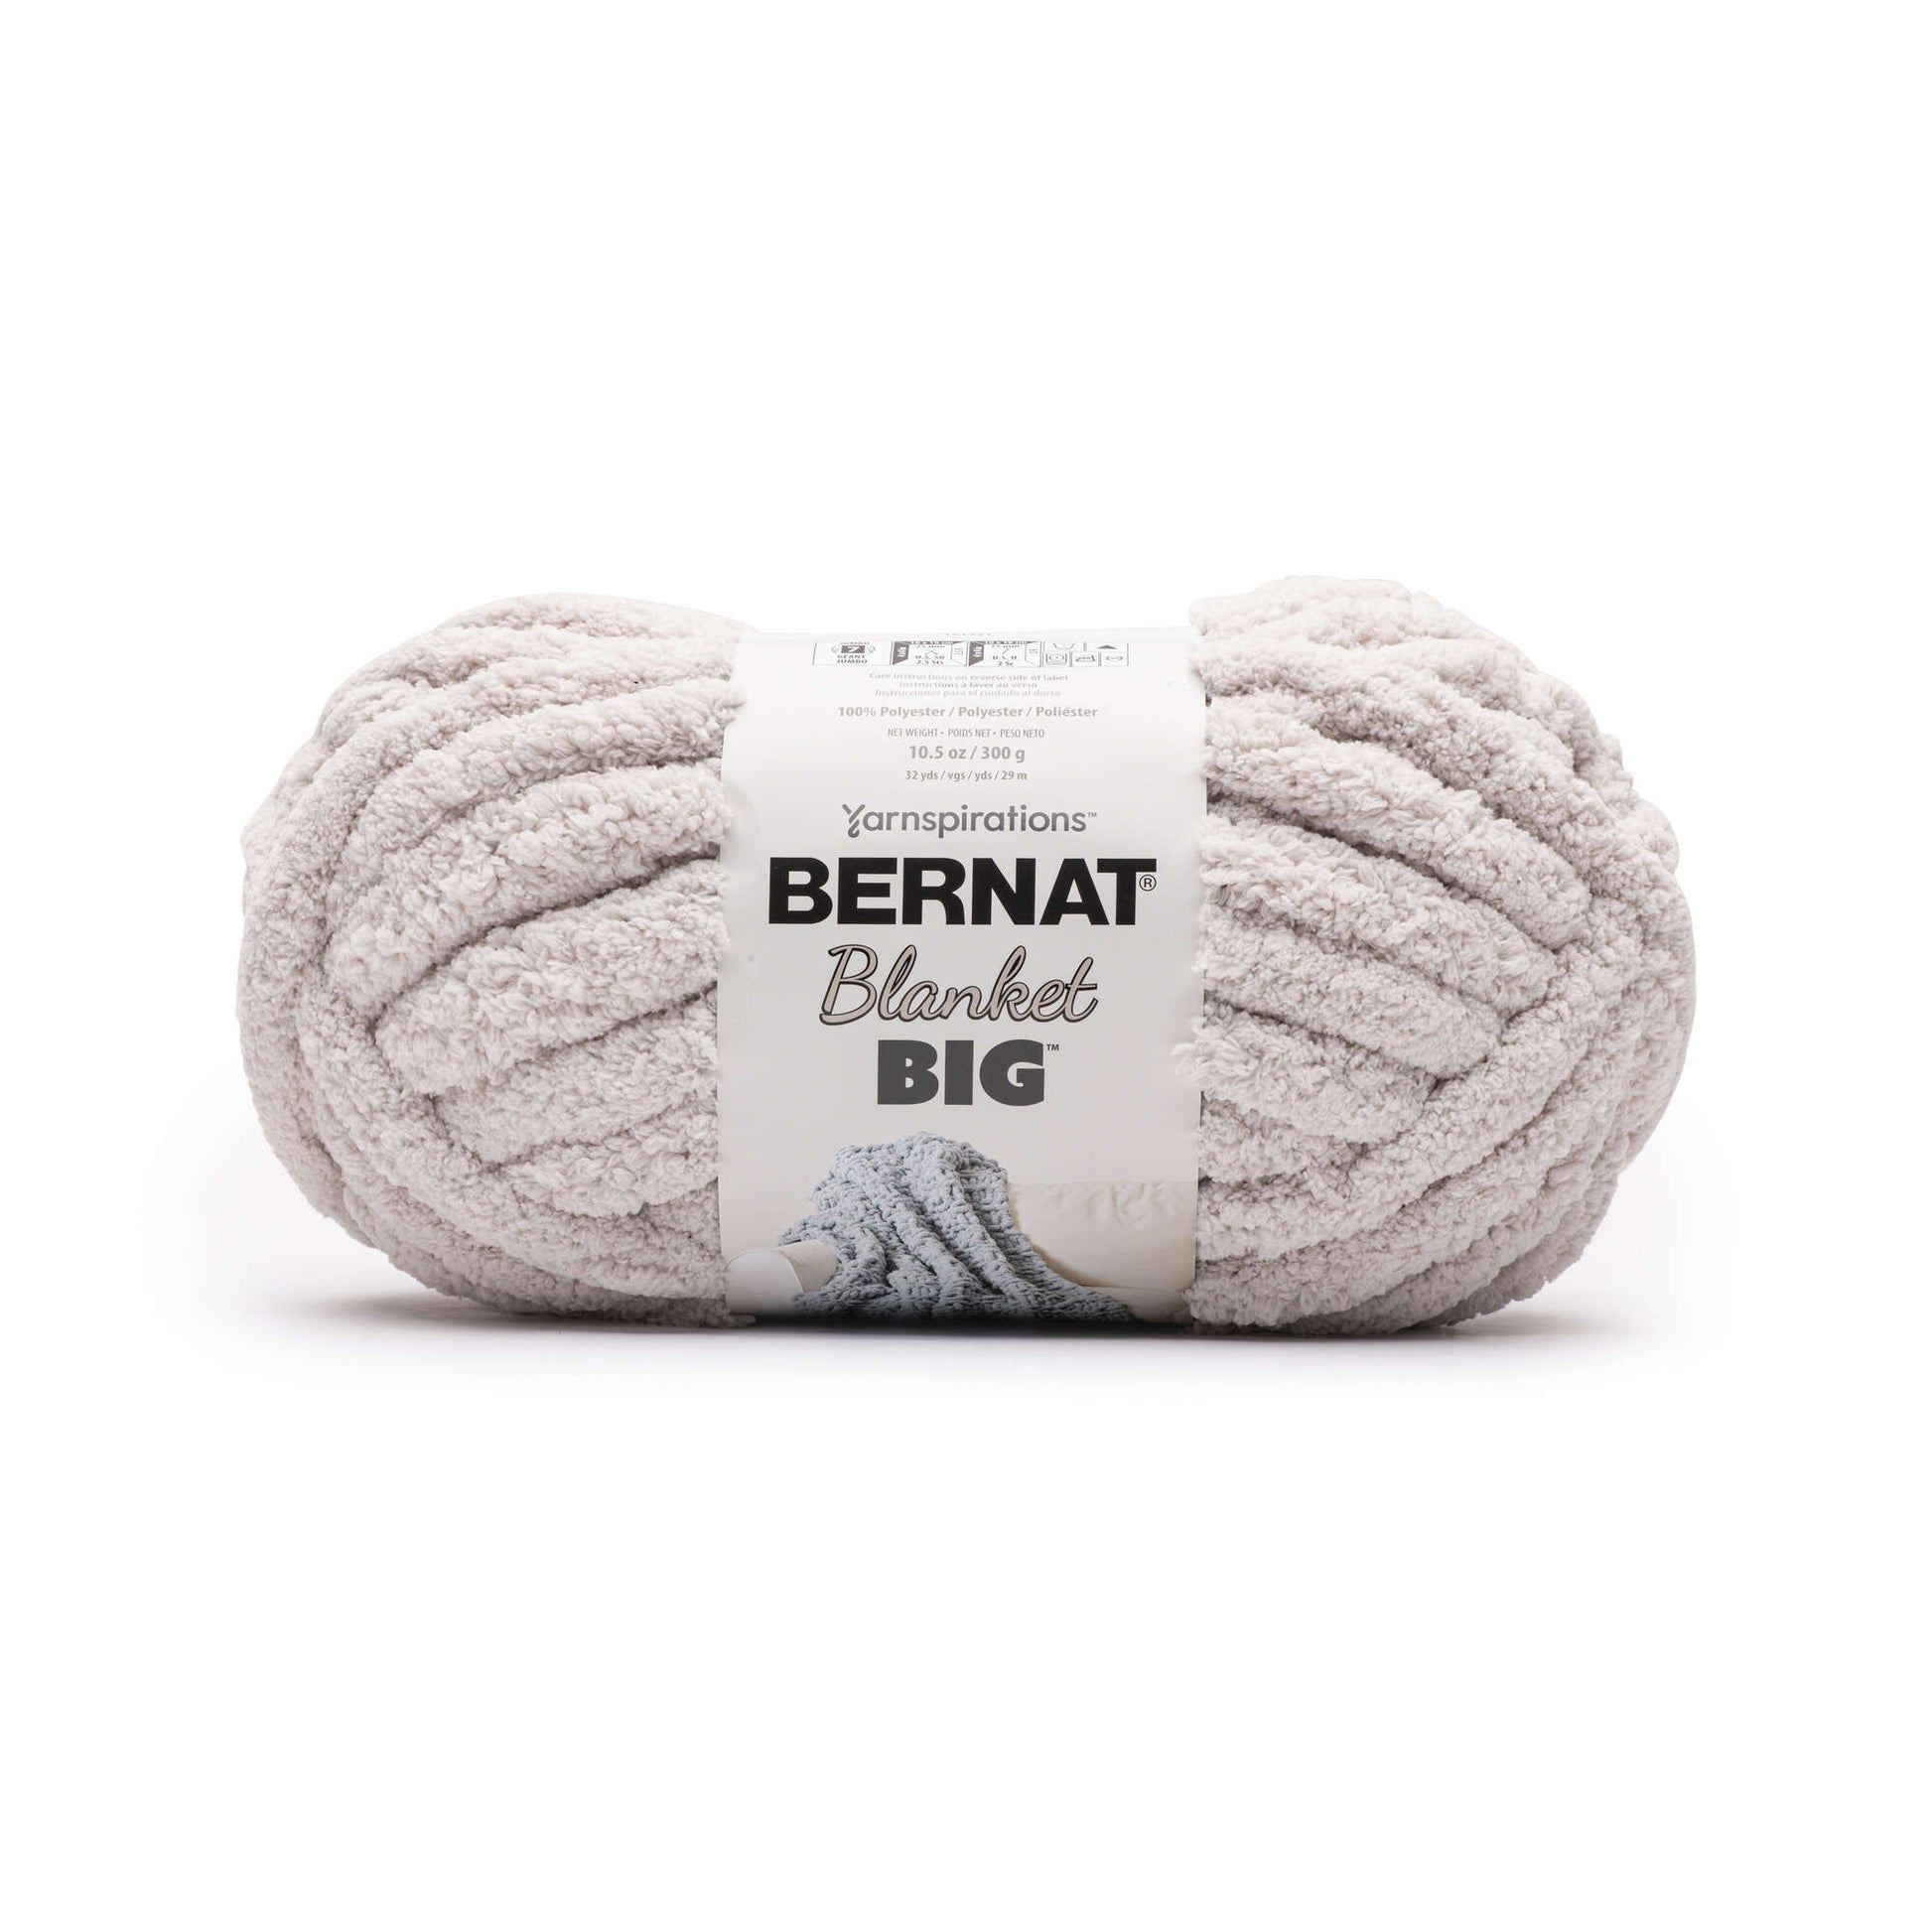 Bernat Blanket Big Yarn (300g/10.5oz) French Vanilla